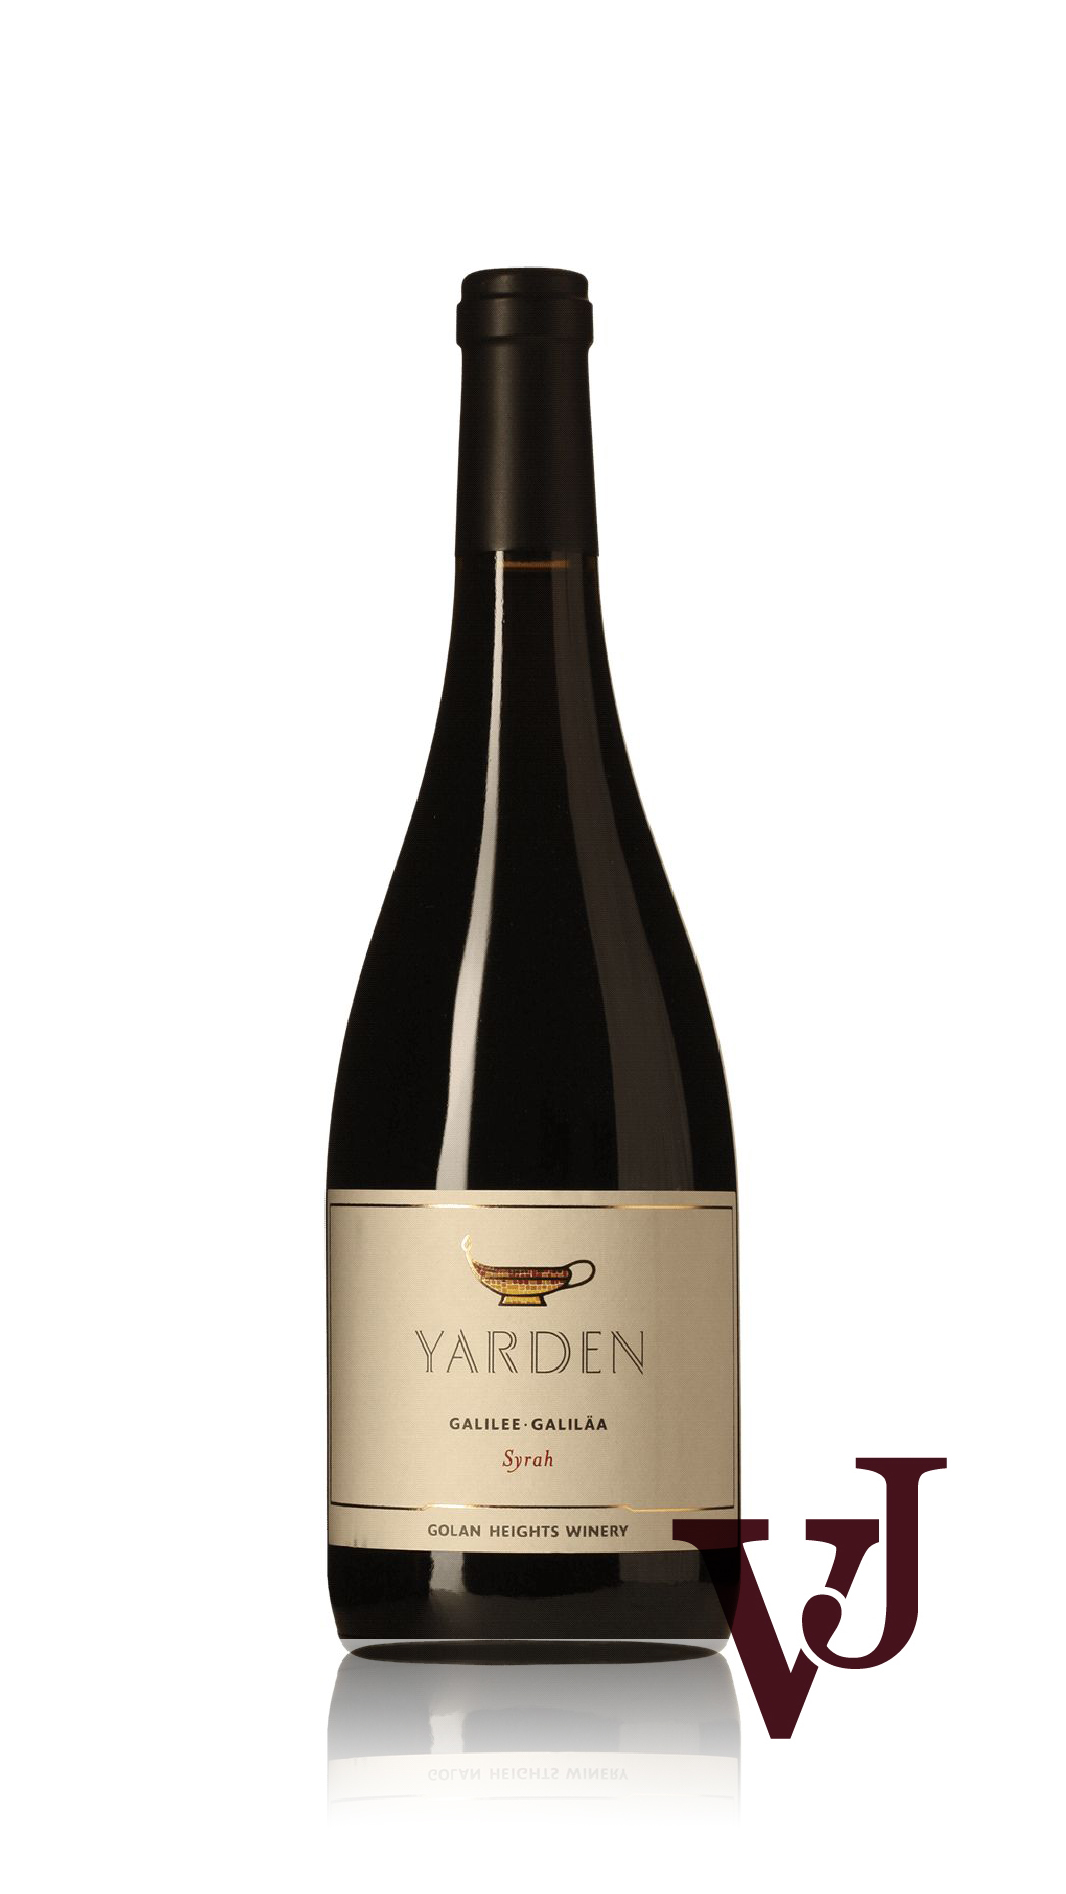 Rött Vin - Yarden Syrah artikel nummer 7103701 från producenten Golan Heights Winery från området Israel